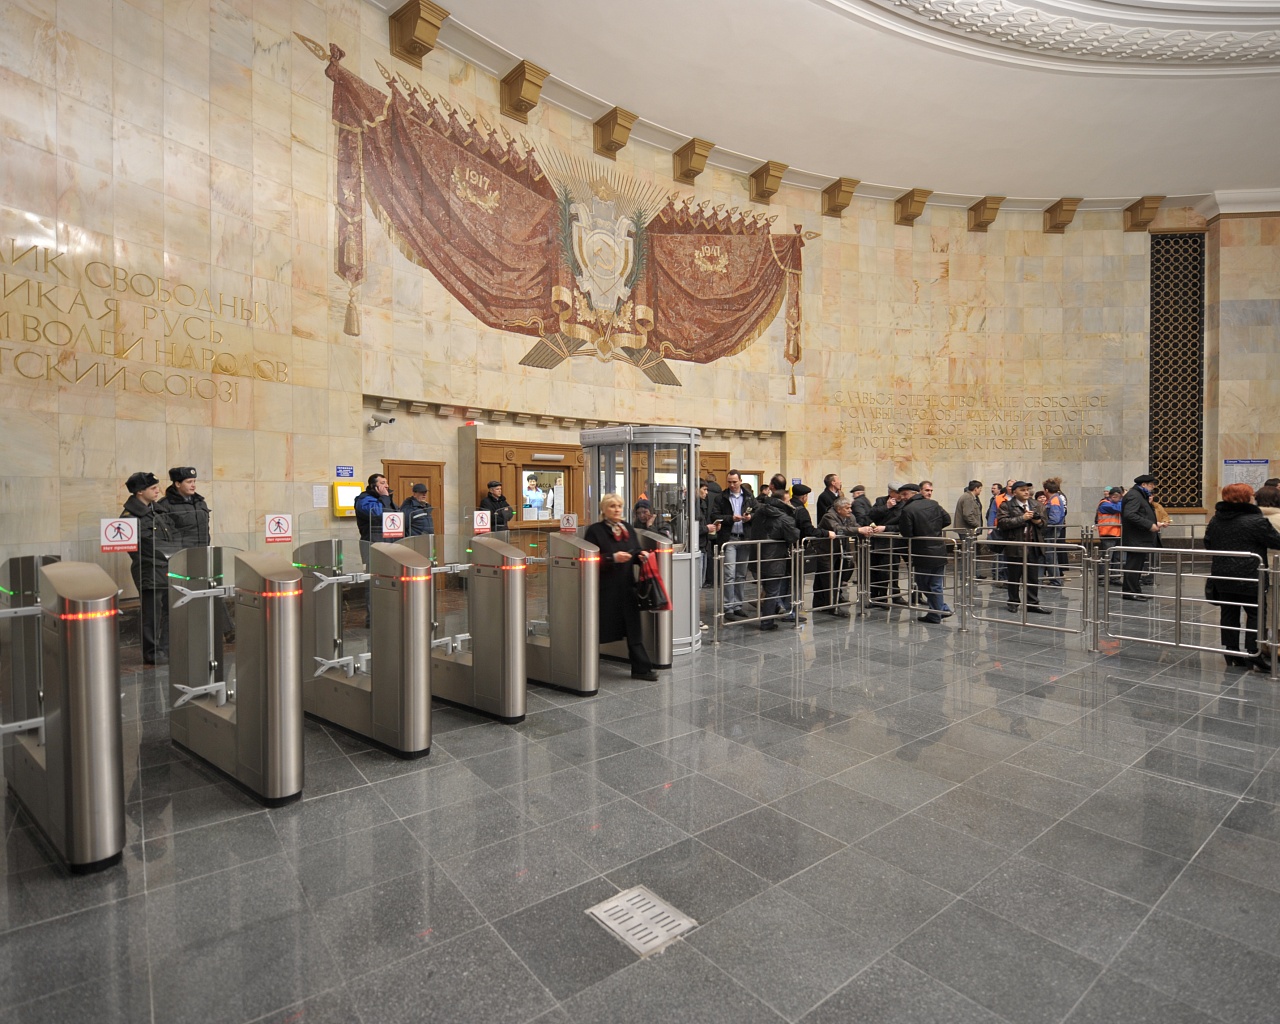 Около 1,5 тысяч пассажиров столичного метро оплачивают проезд по "безналу"